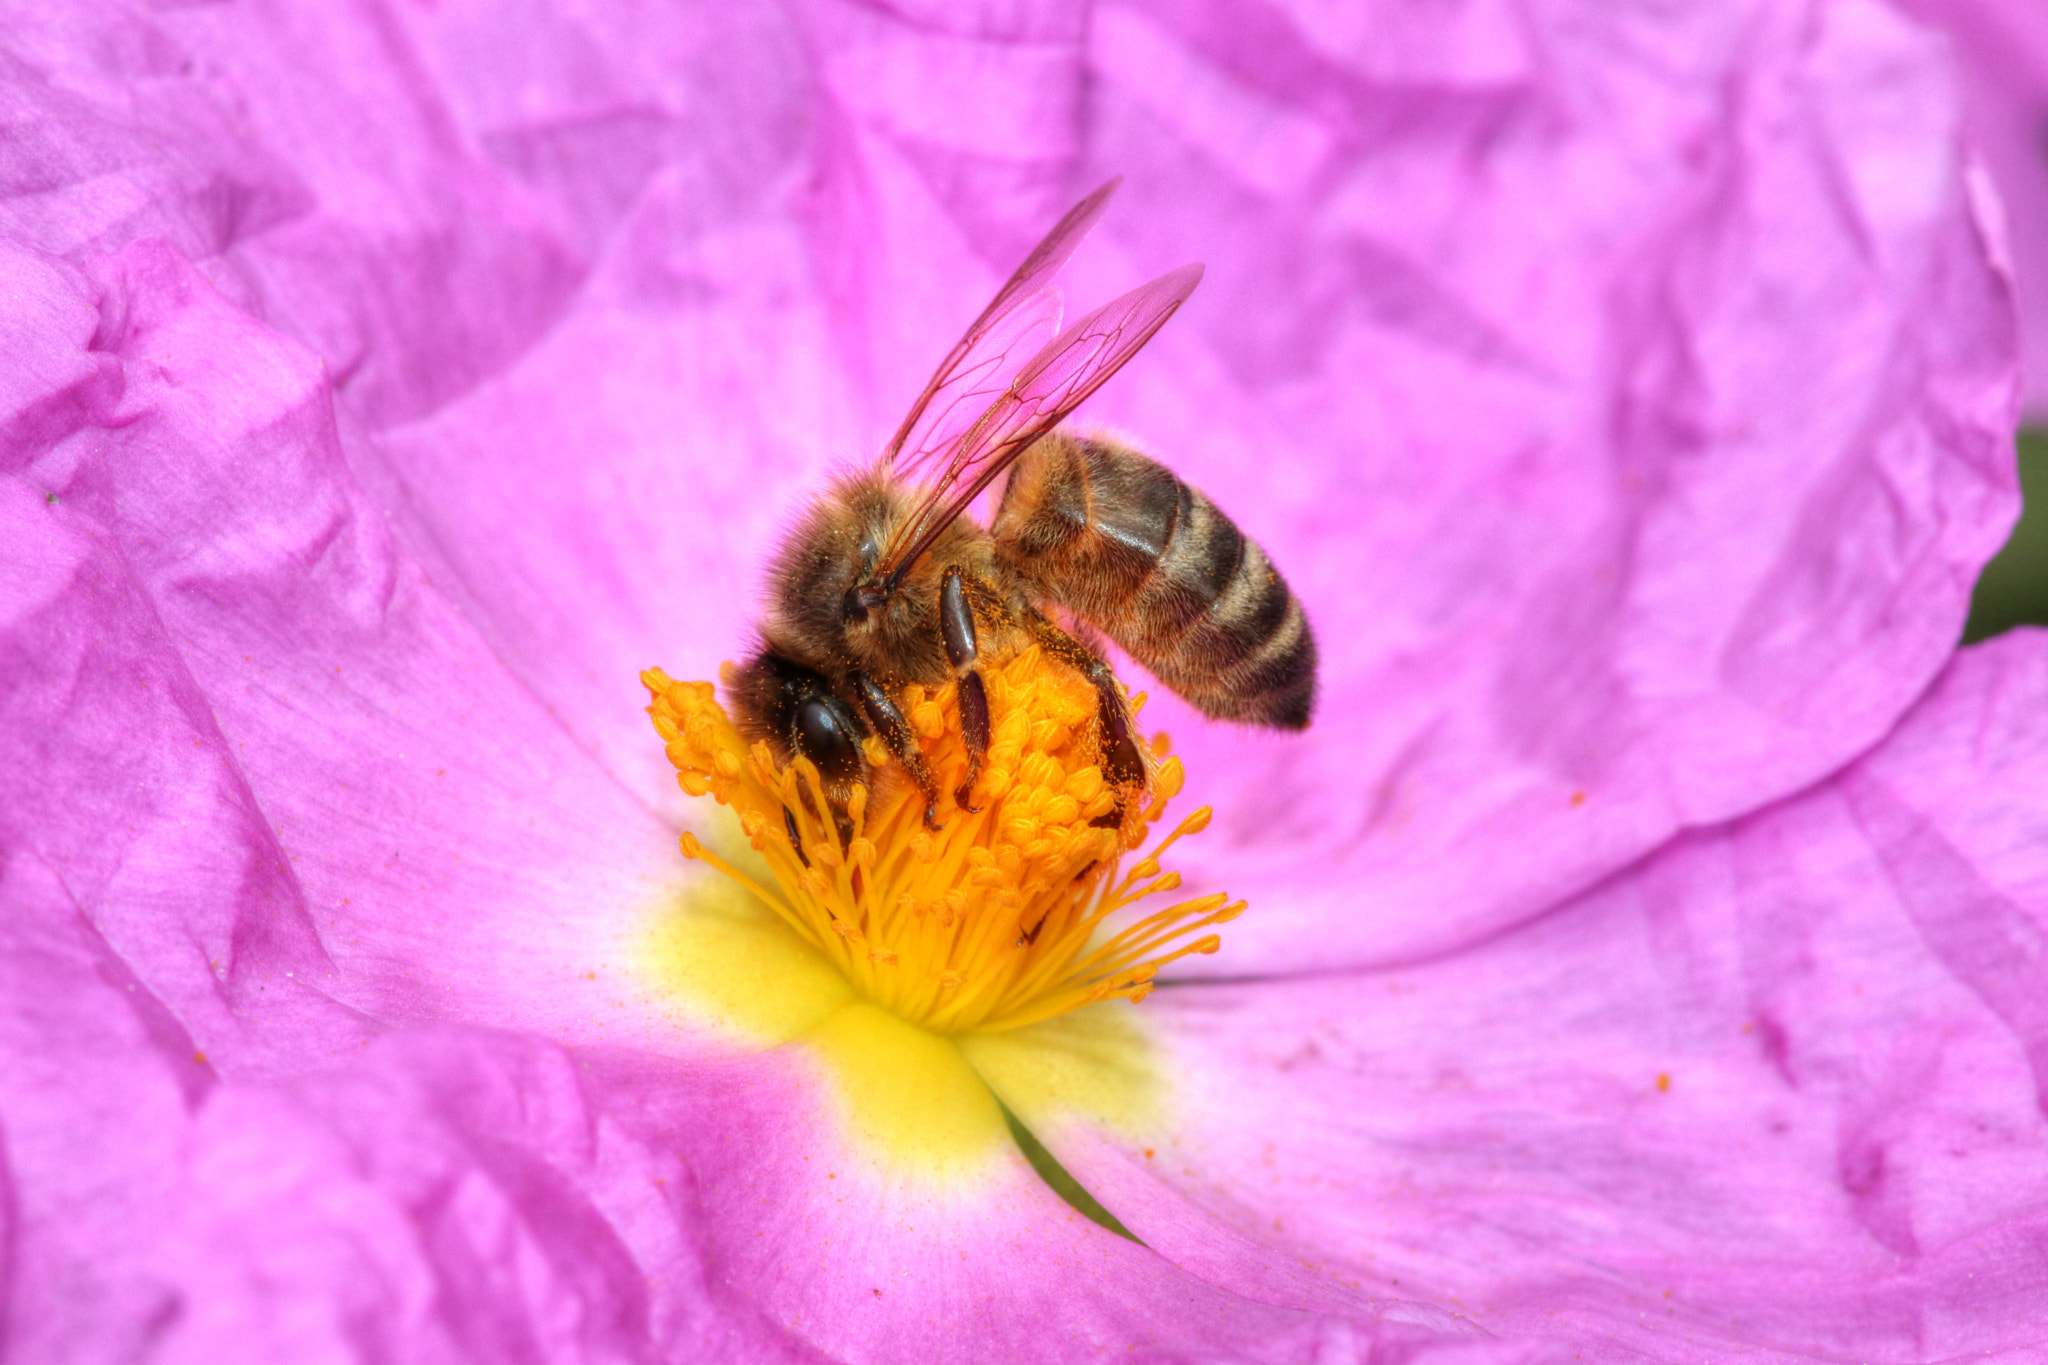 Canon EOS 80D + Sigma 105mm F2.8 EX DG OS HSM sample photo. Insecte abeille européenne apis mellifera () photography